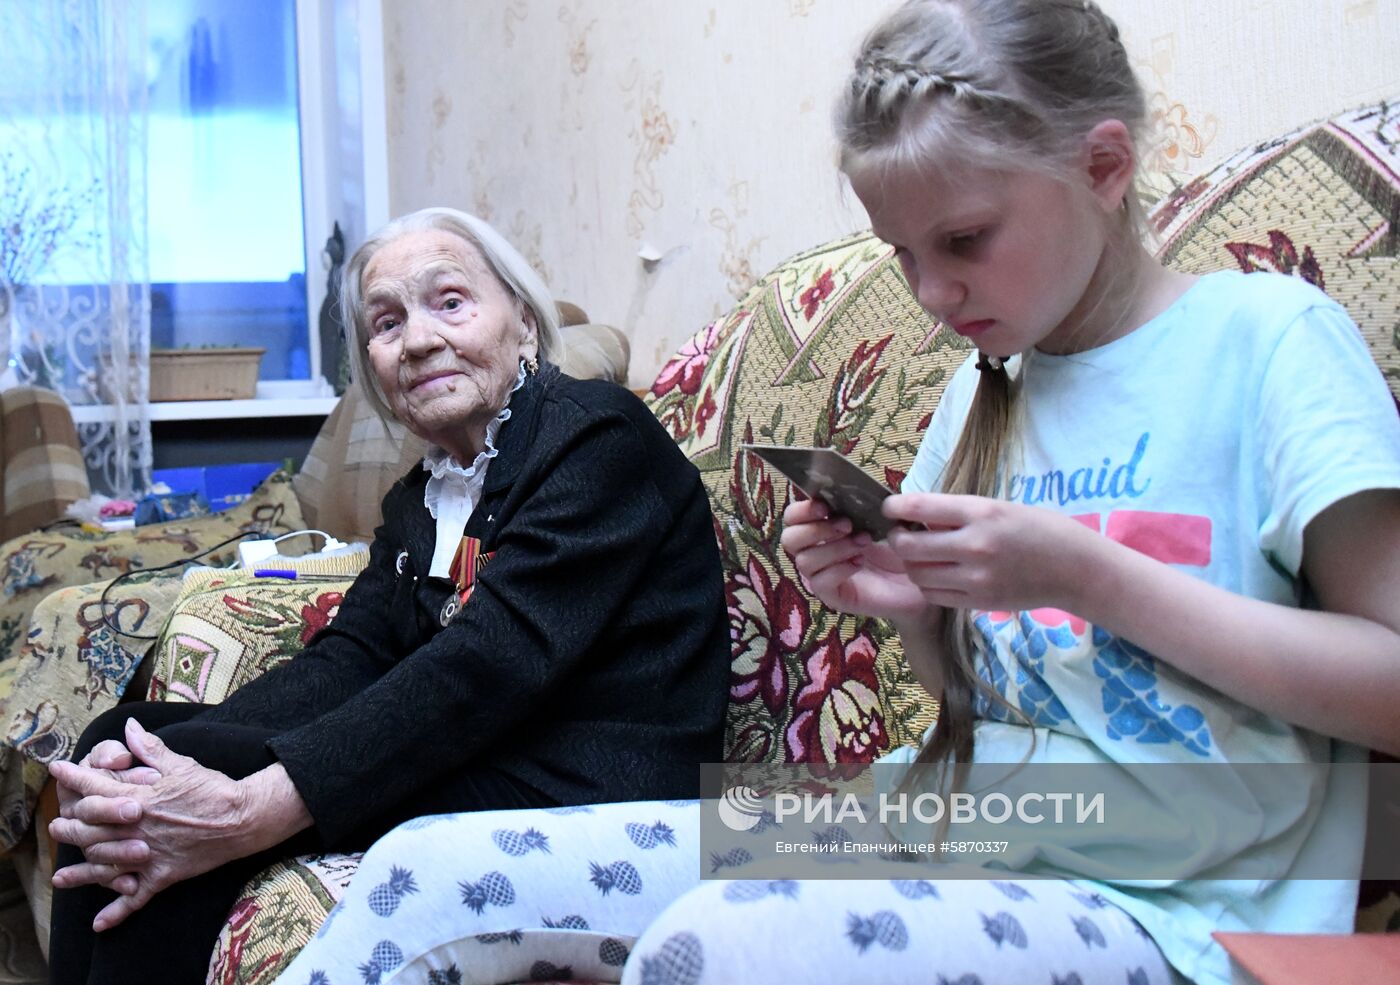 Ветеран Великой Отечественной войны Мария Вахутина